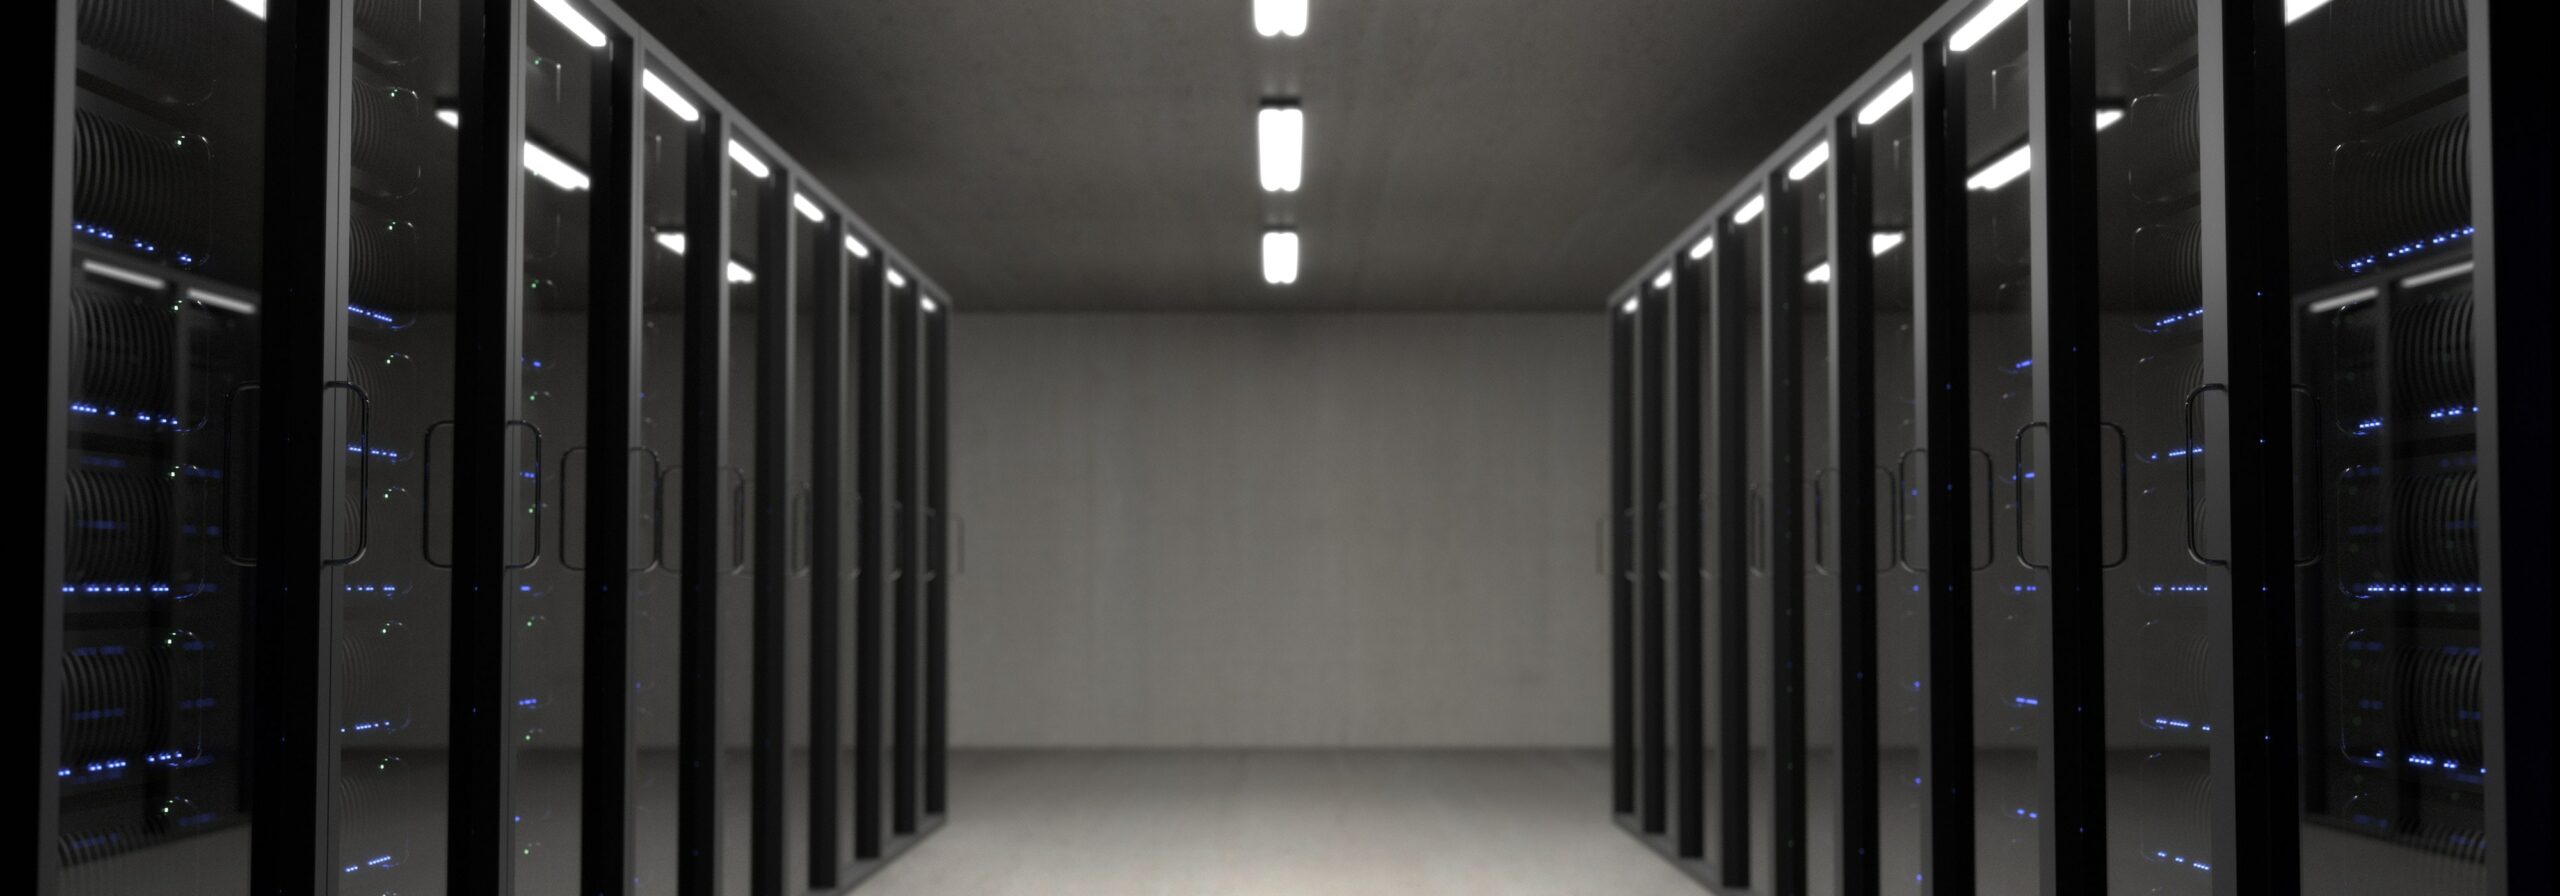 armoires de centre de données pour le stockage en nuage